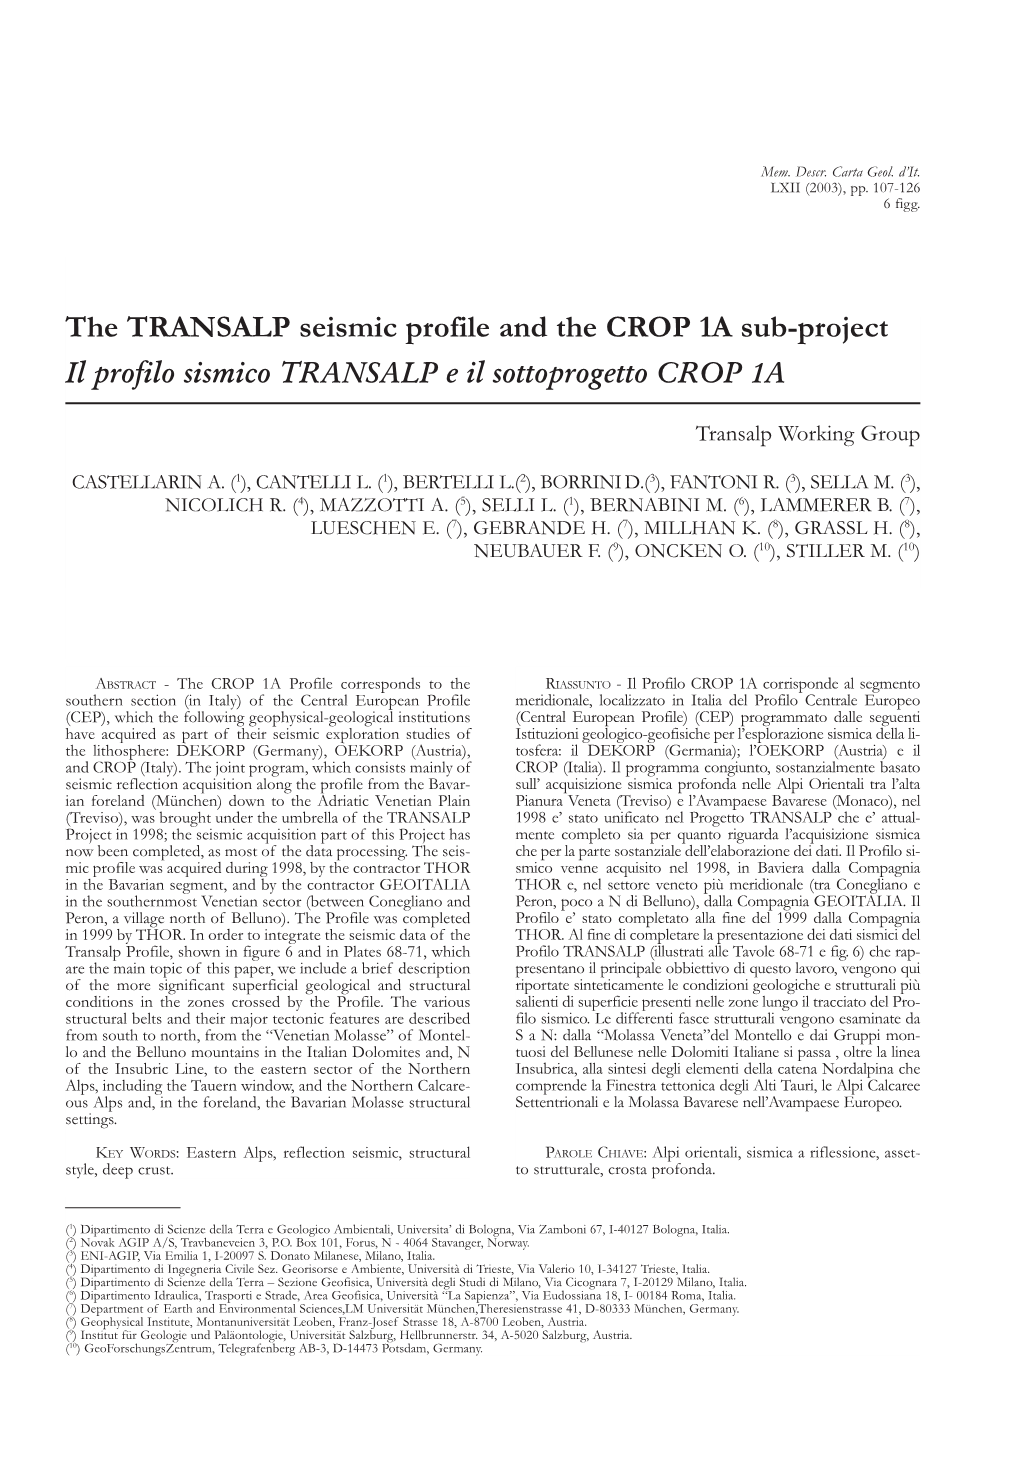 The TRANSALP Seismic Profile and the CROP 1A Sub-Project Il Profilo Sismico TRANSALP E Il Sottoprogetto CROP 1A